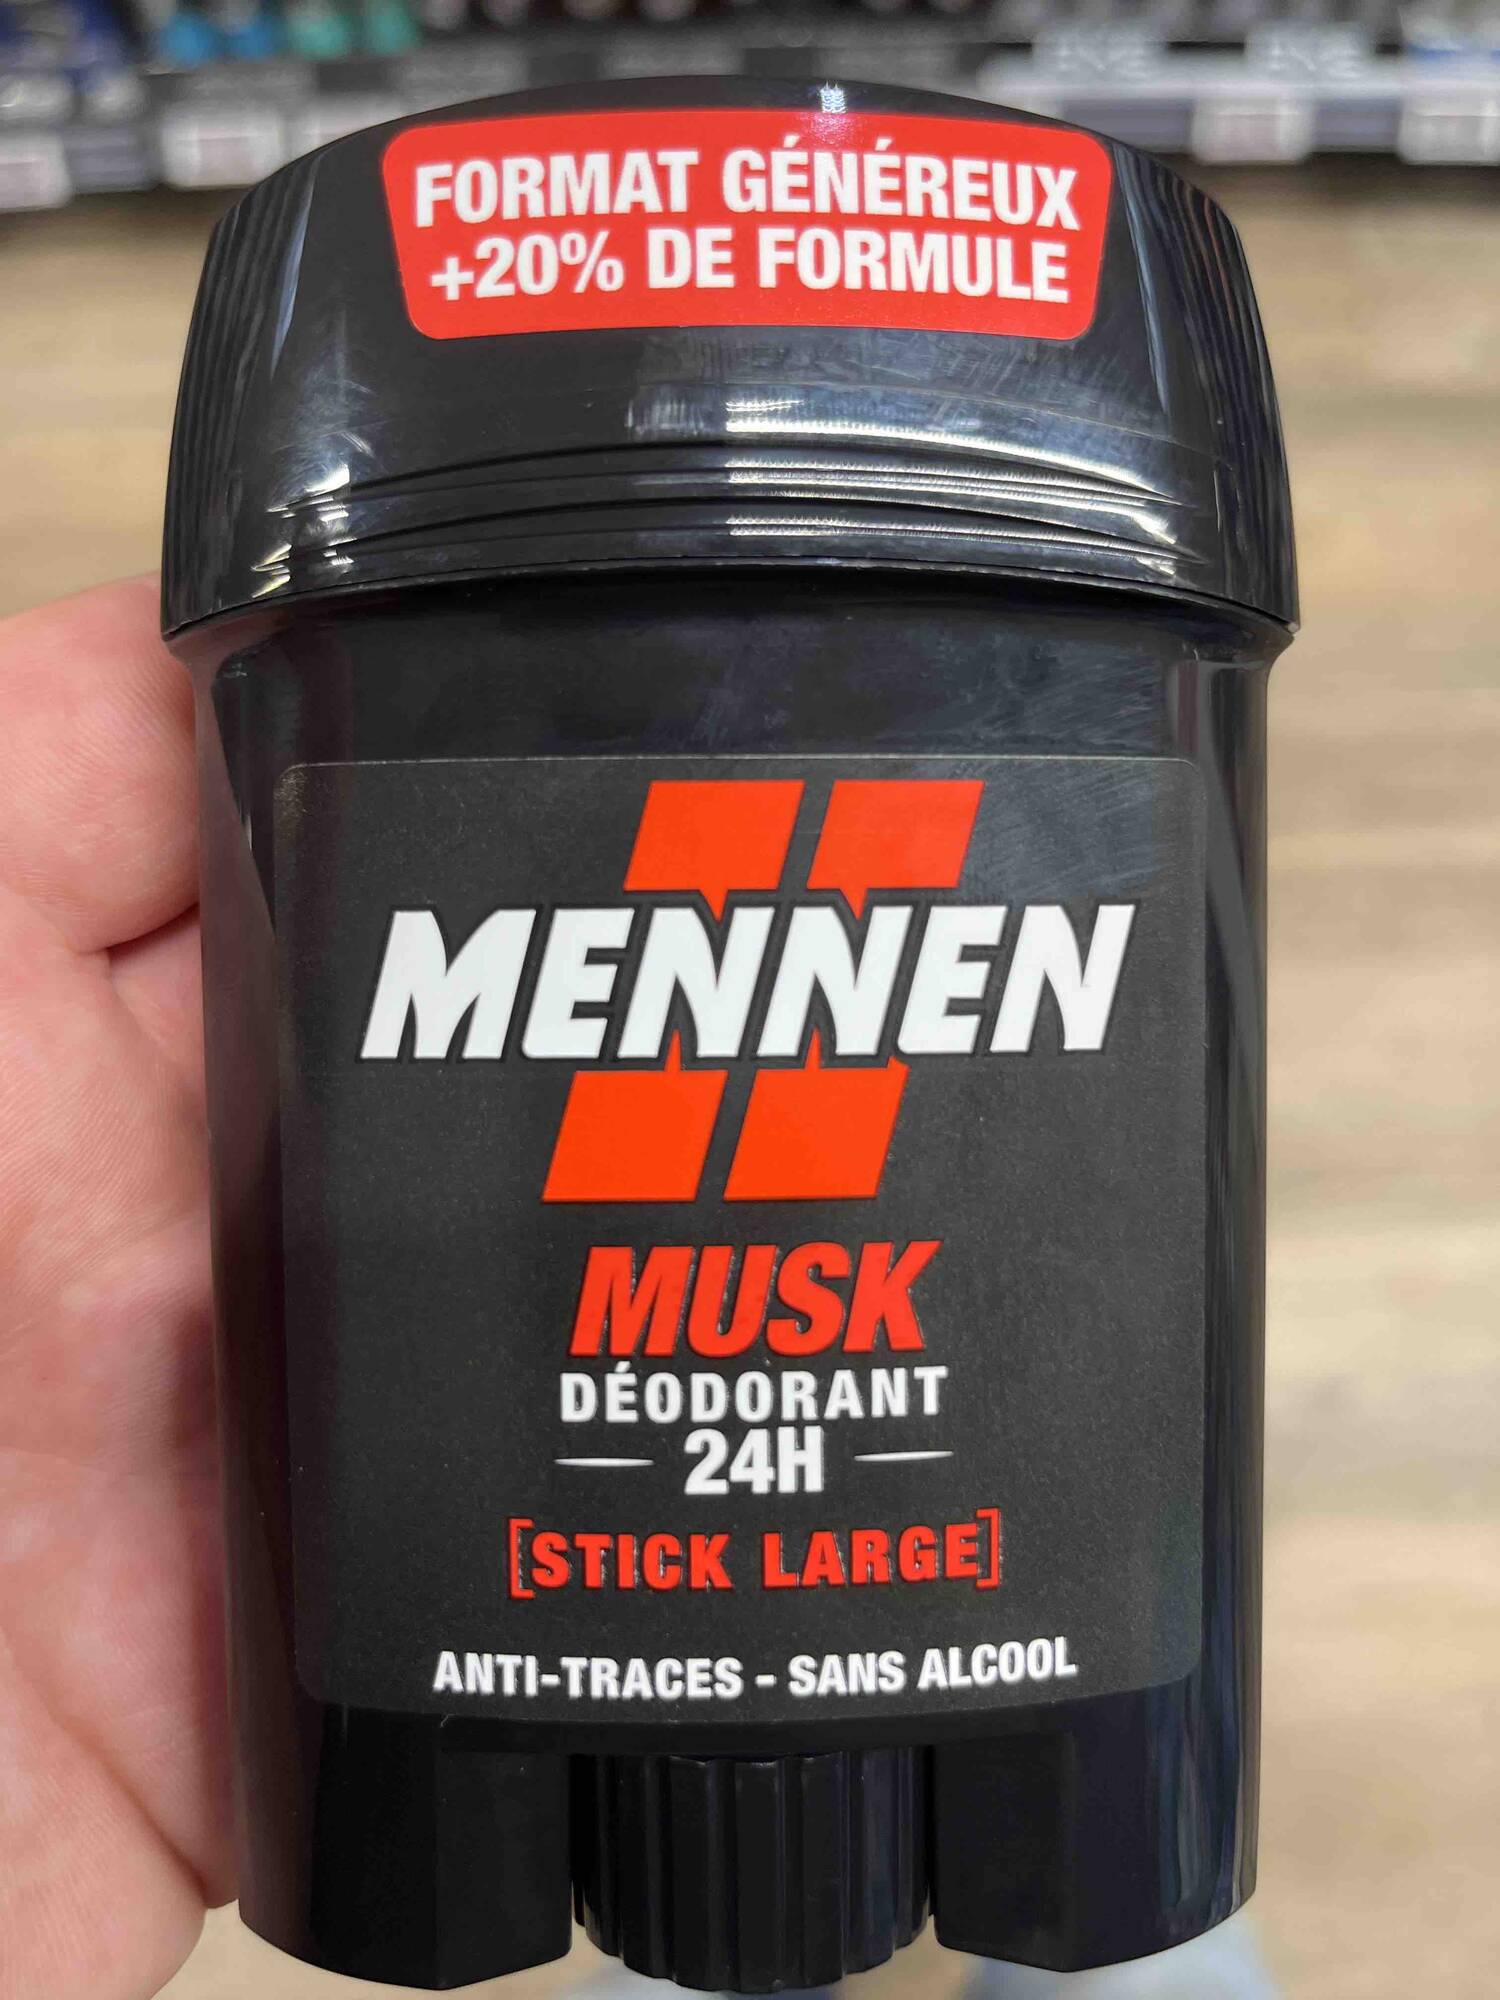 MENNEN - Musk déodorant 24h